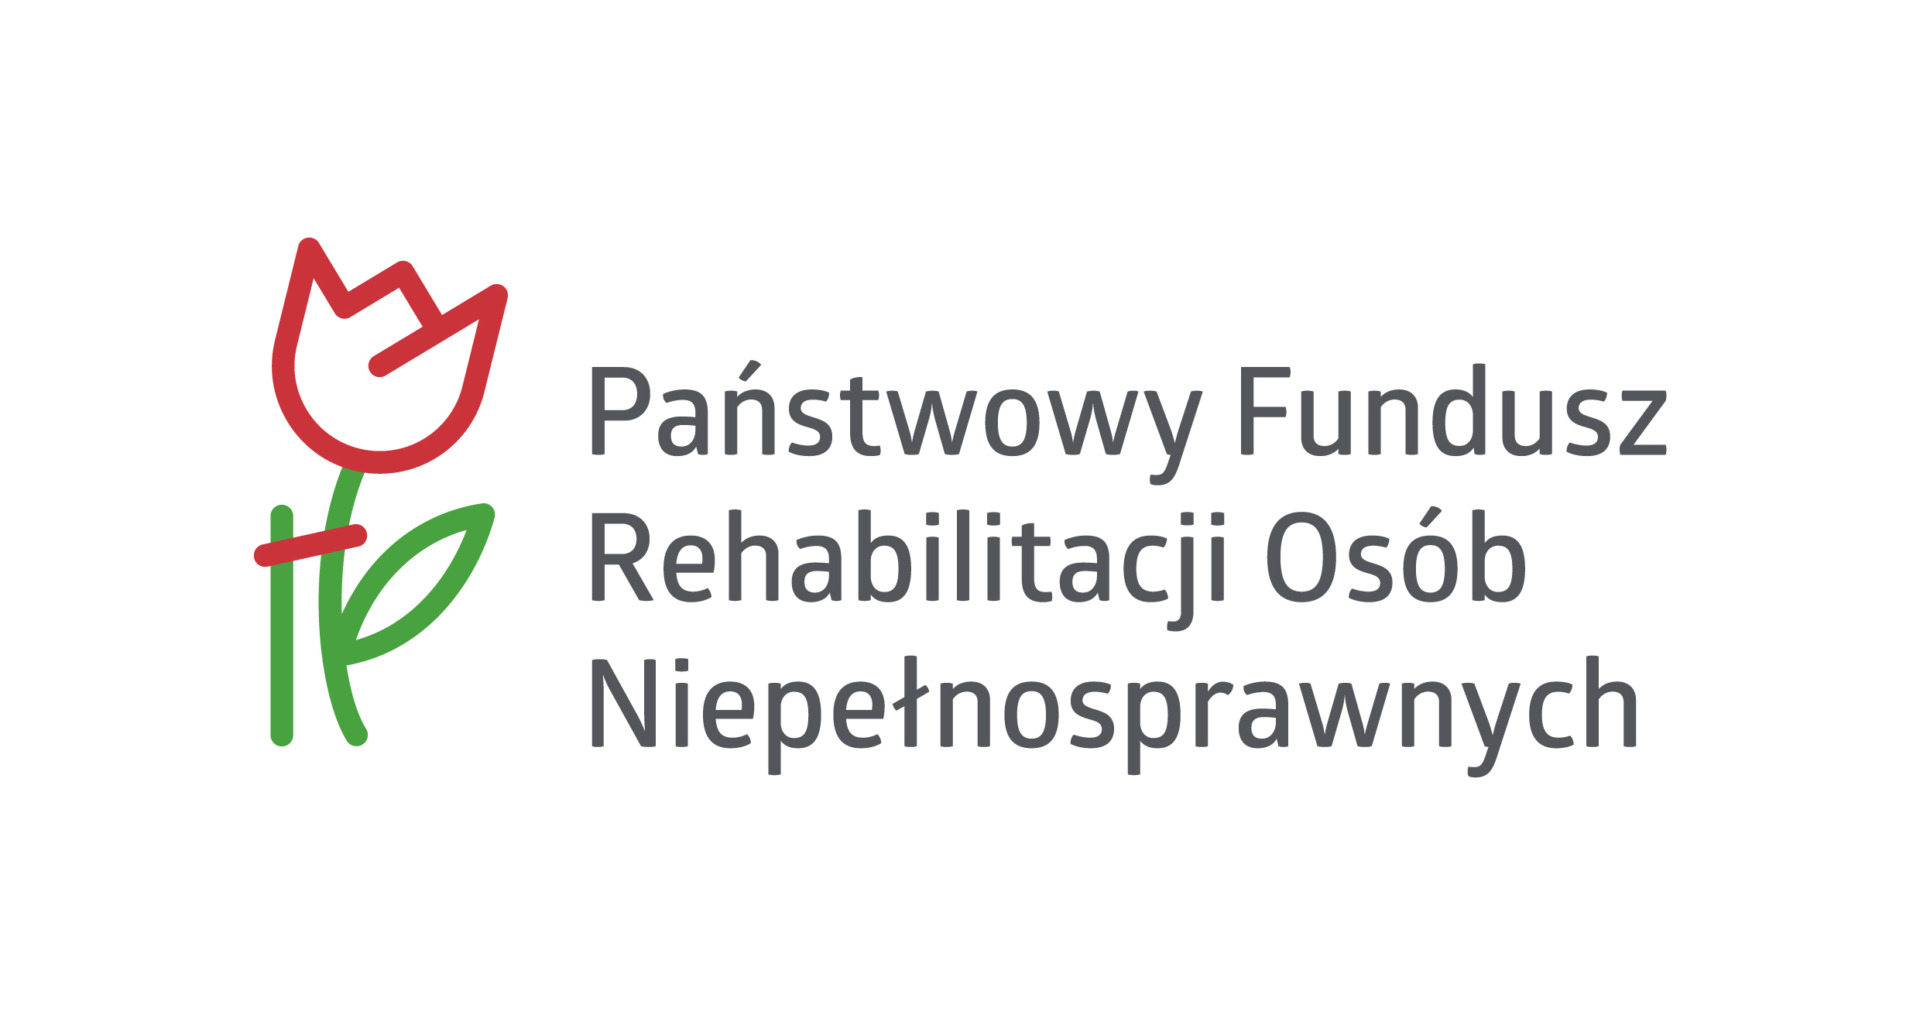 logo państwowy fundusz rehabilitacyjny osób niepełnosprawnych